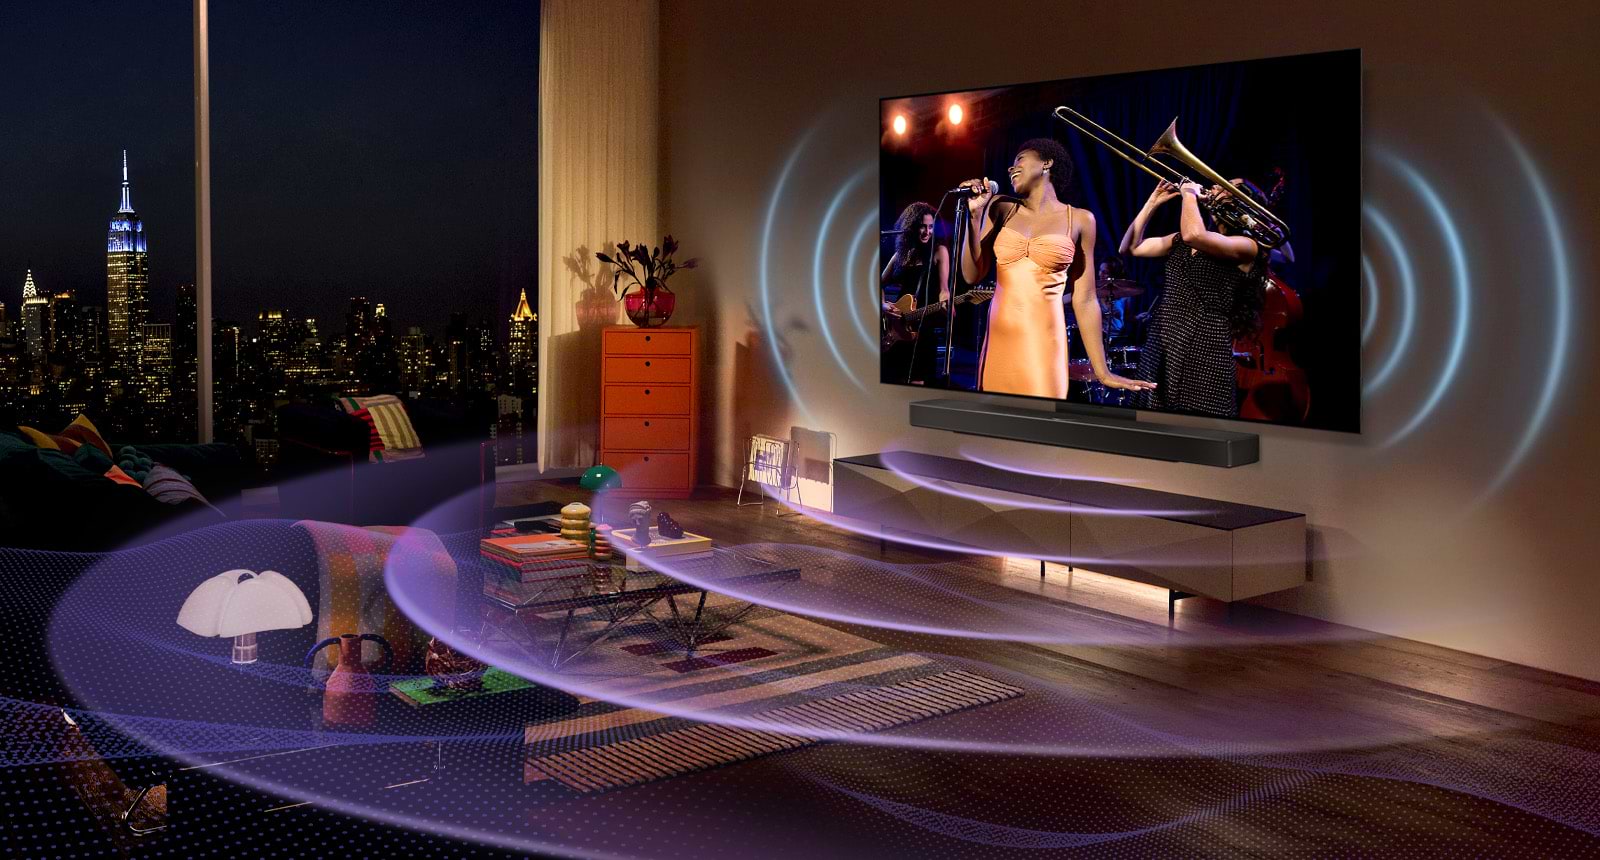 טלוויזיה חכמה  בטכנולוגייתevo  LG OLED - בגודל 65 אינץ' Smart TV  ברזולוציית K4 דגם: OLED65C36LA